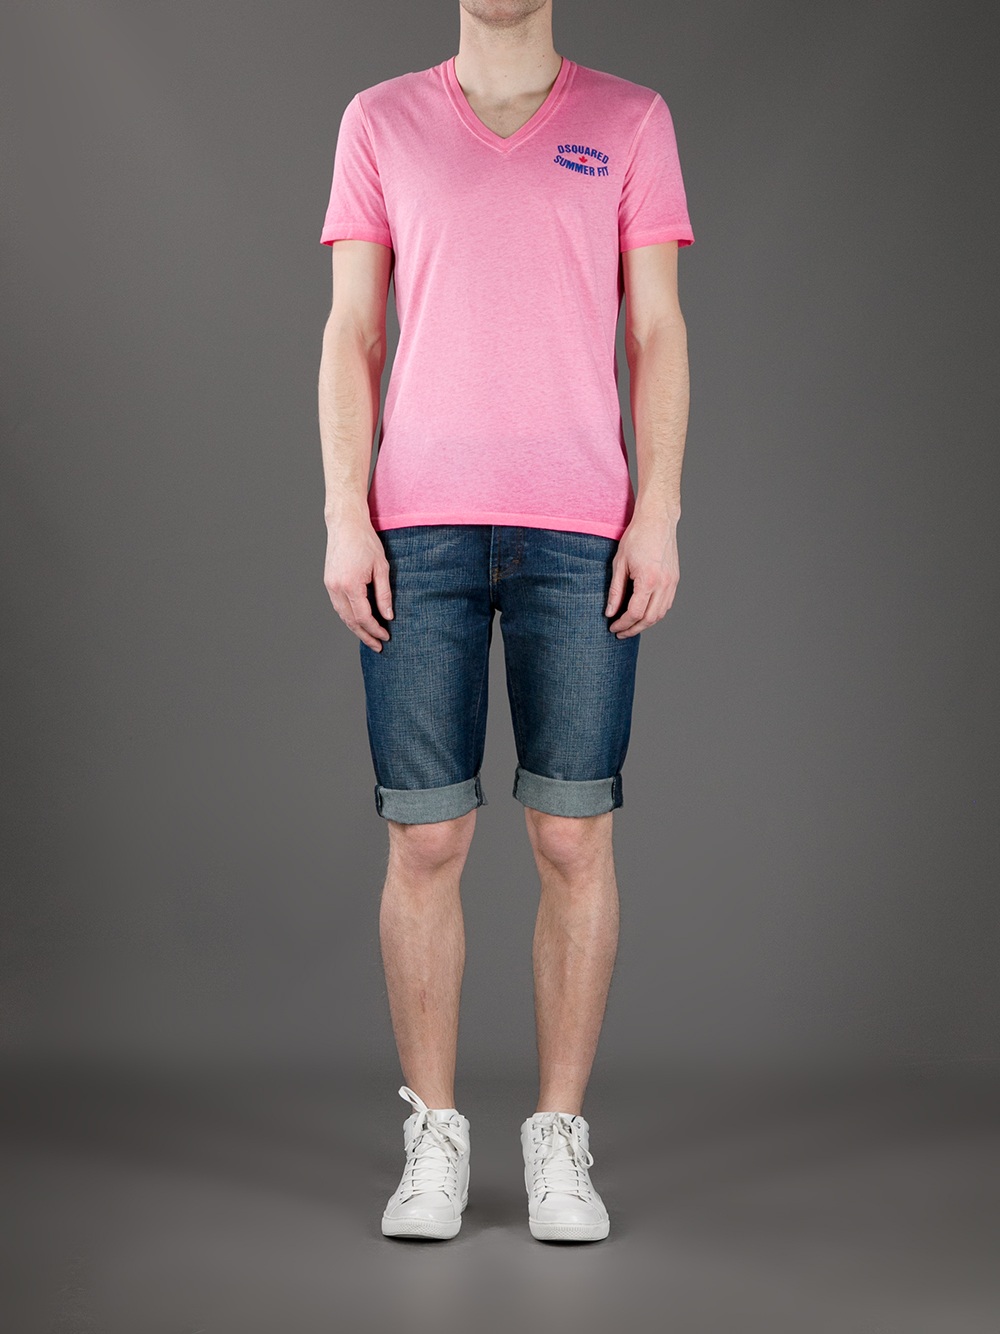 DSquared² V-Neck T-shirt in Pink for Men - Lyst